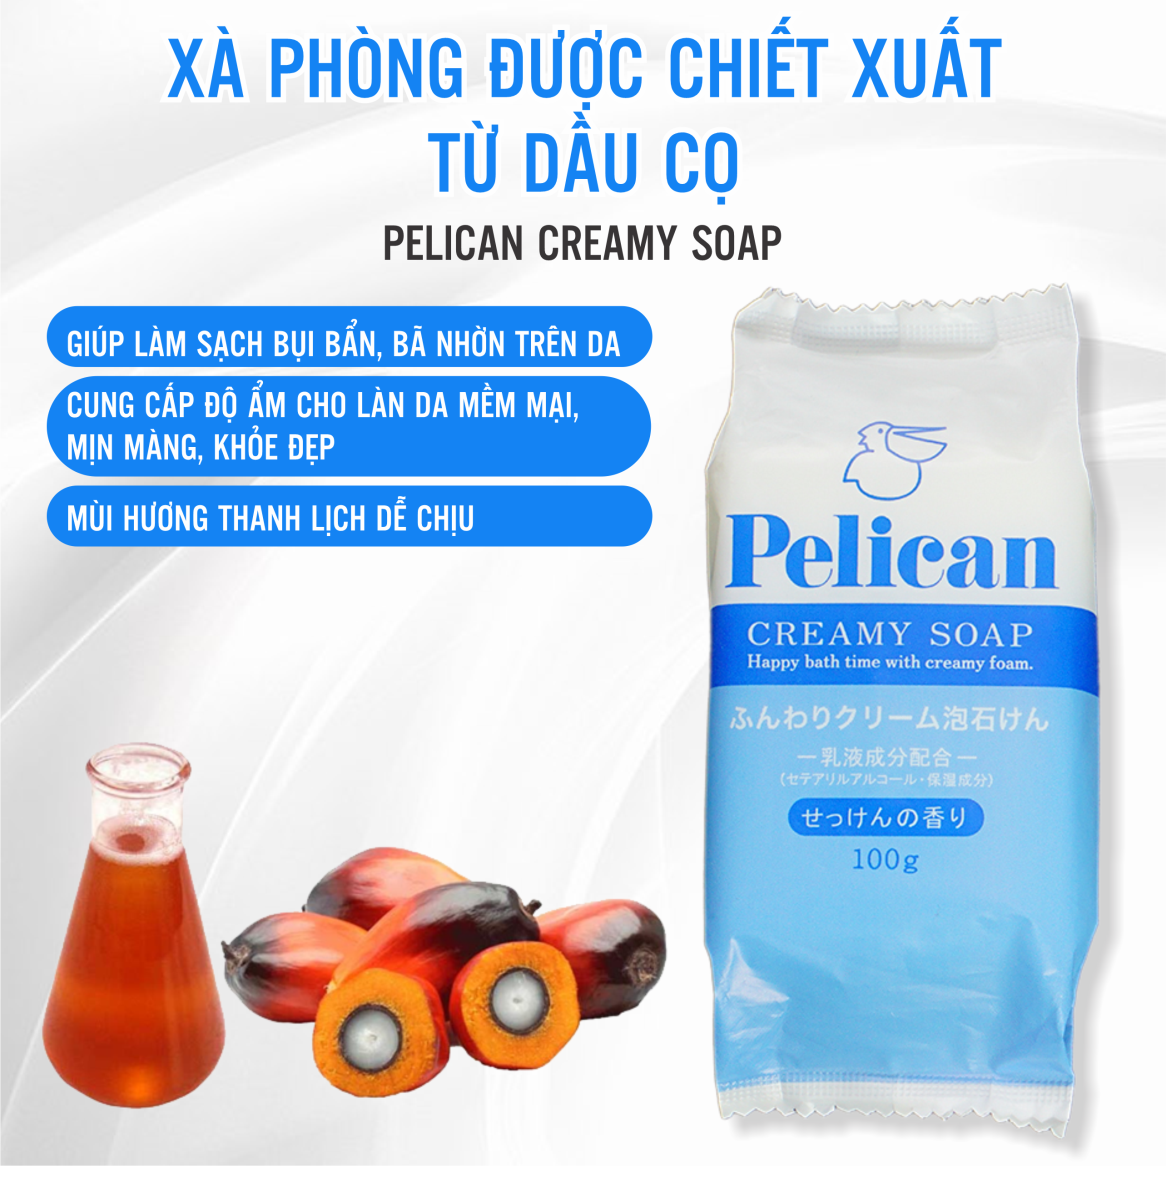 Xà Phòng Tắm Cấp Ẩm Chiết Xuất Dầu Cọ Pelican Creamy Soap (100g)